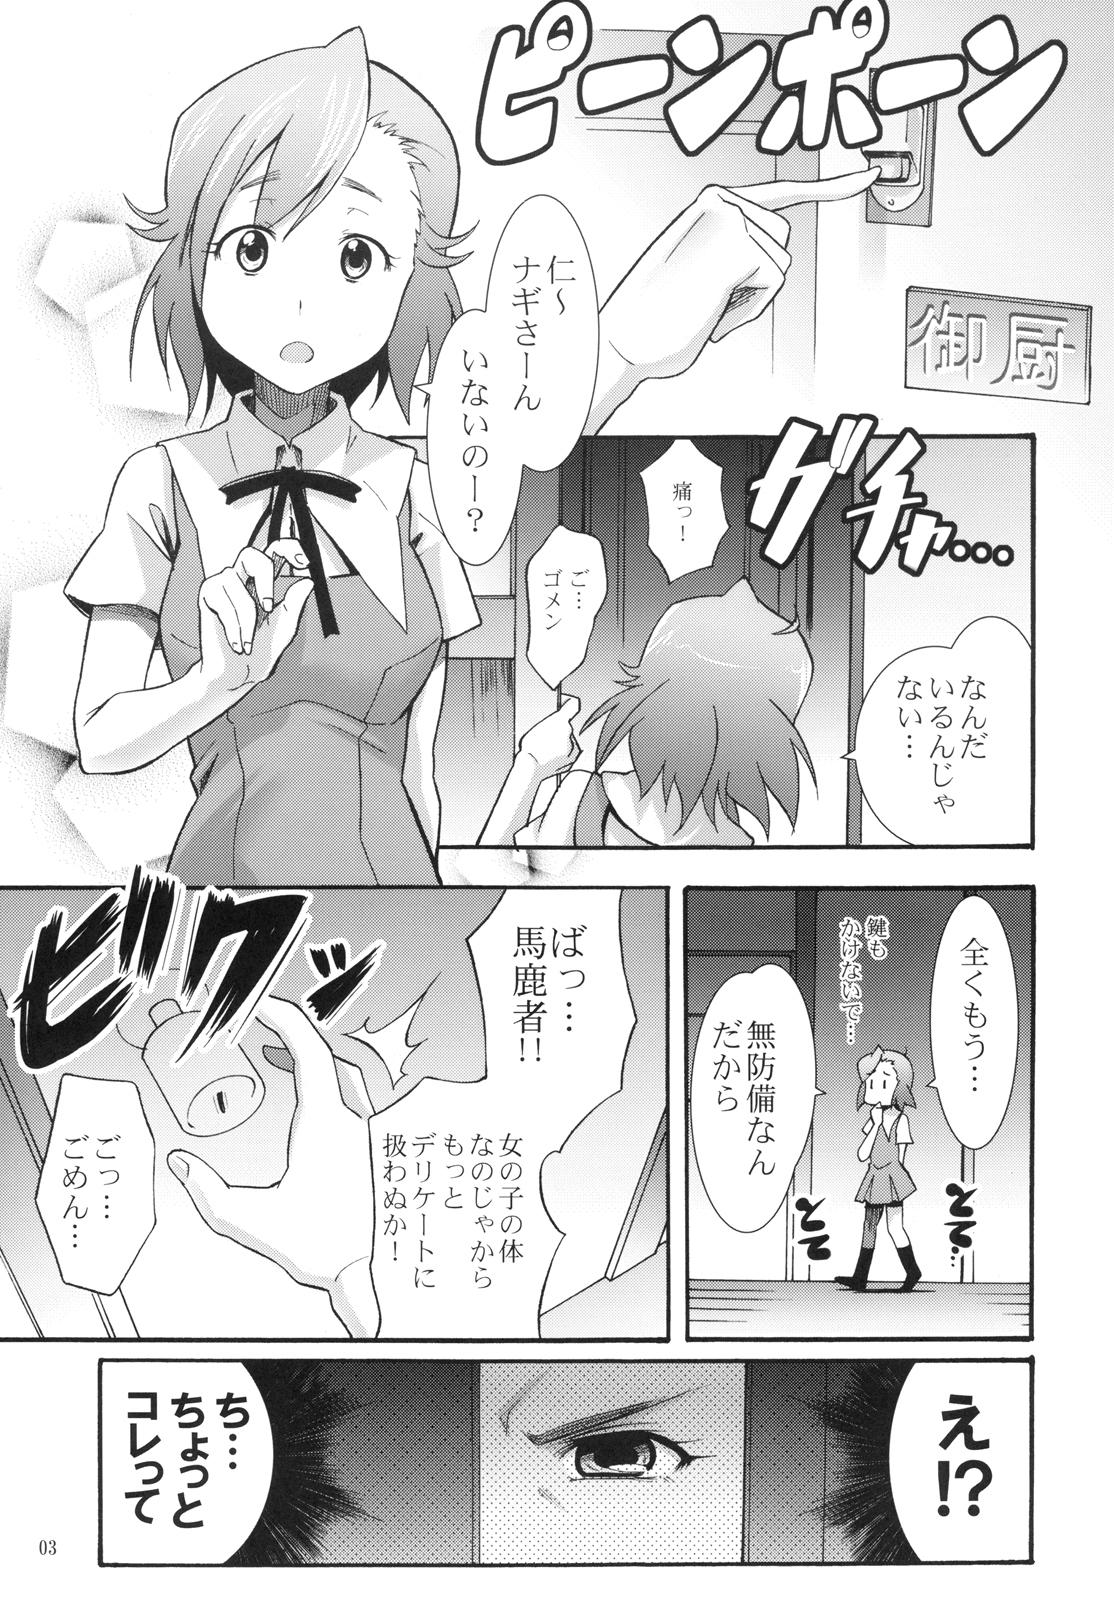 Muscles Tsugunagi - Kannagi Mms - Page 7